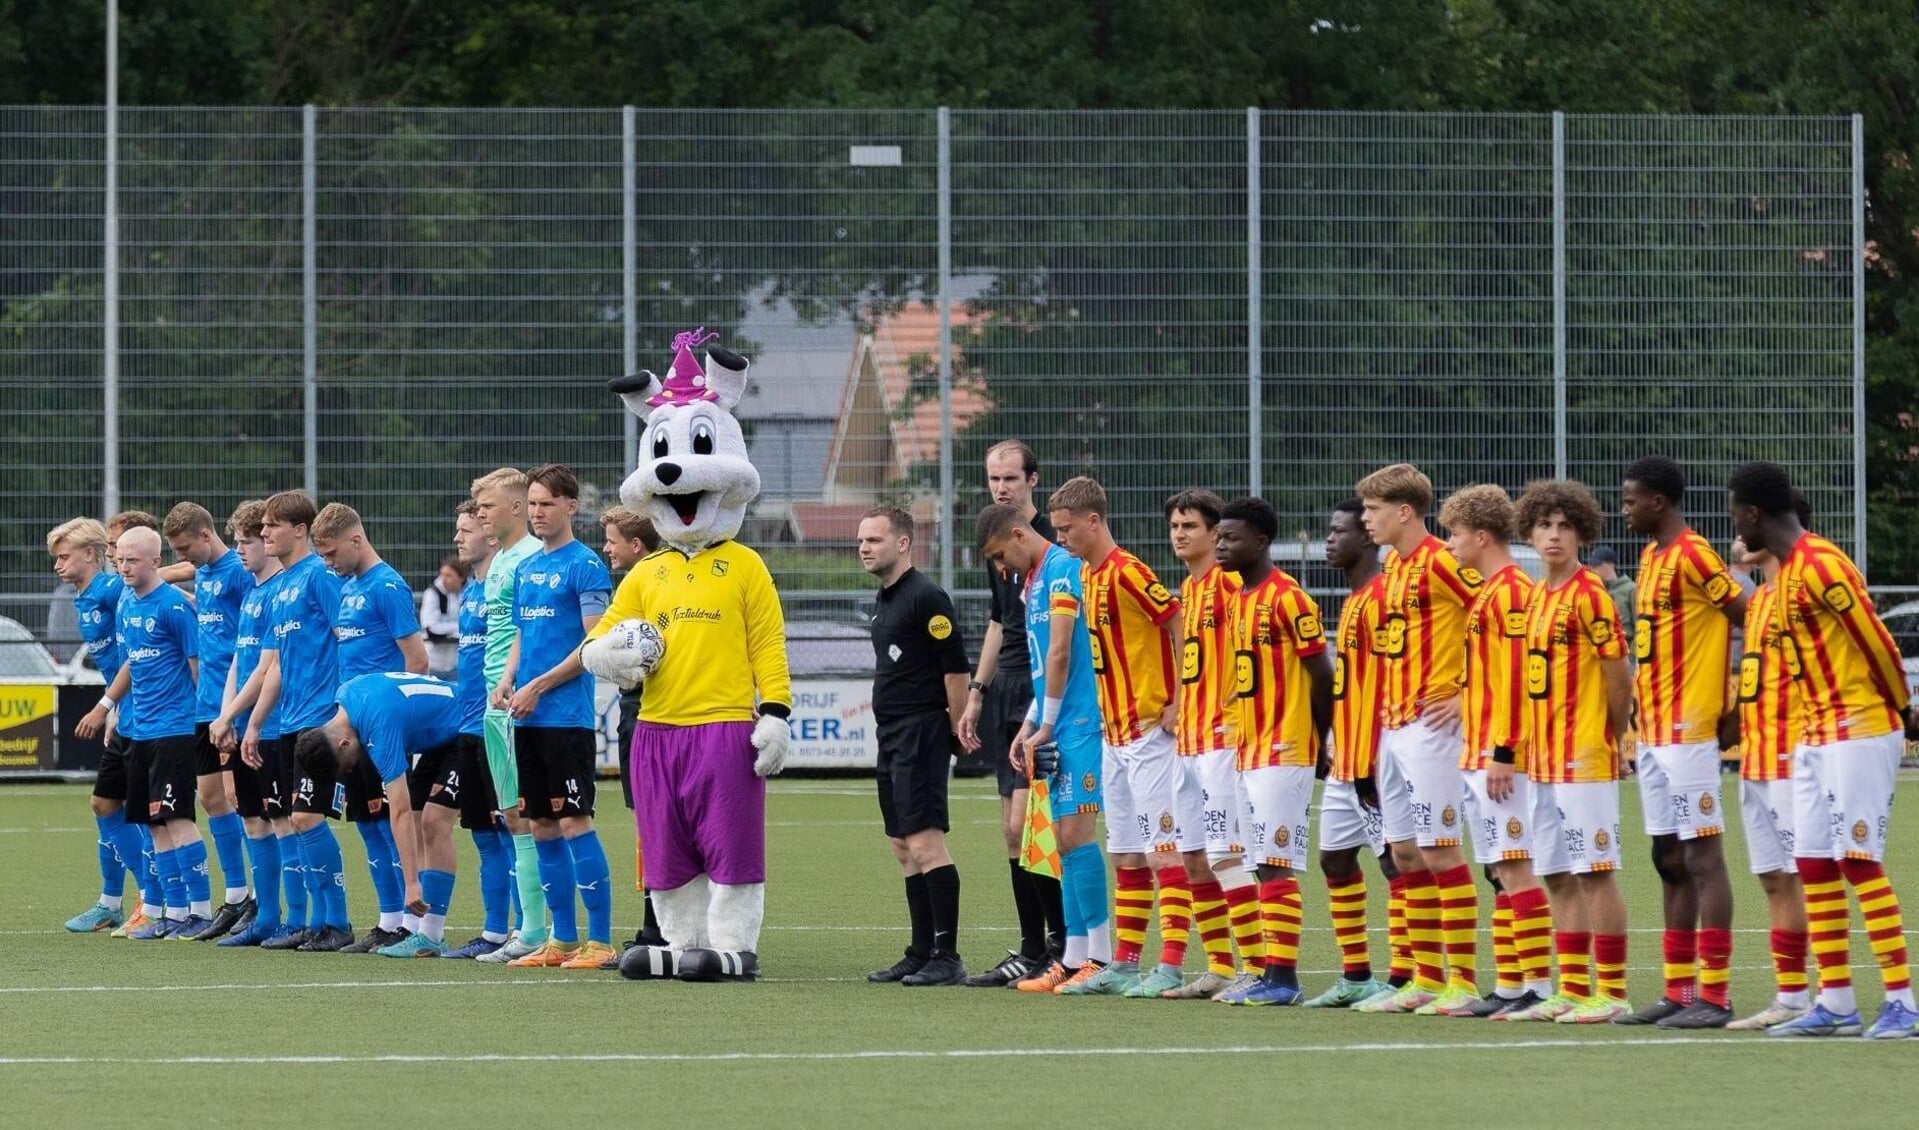 De finalisten van de editie 2022 Halmstads BK (l) en KV Mechelen in het bijzijn van mascotte Rupo die de aftrap verrichte. Foto: Blacktax. 